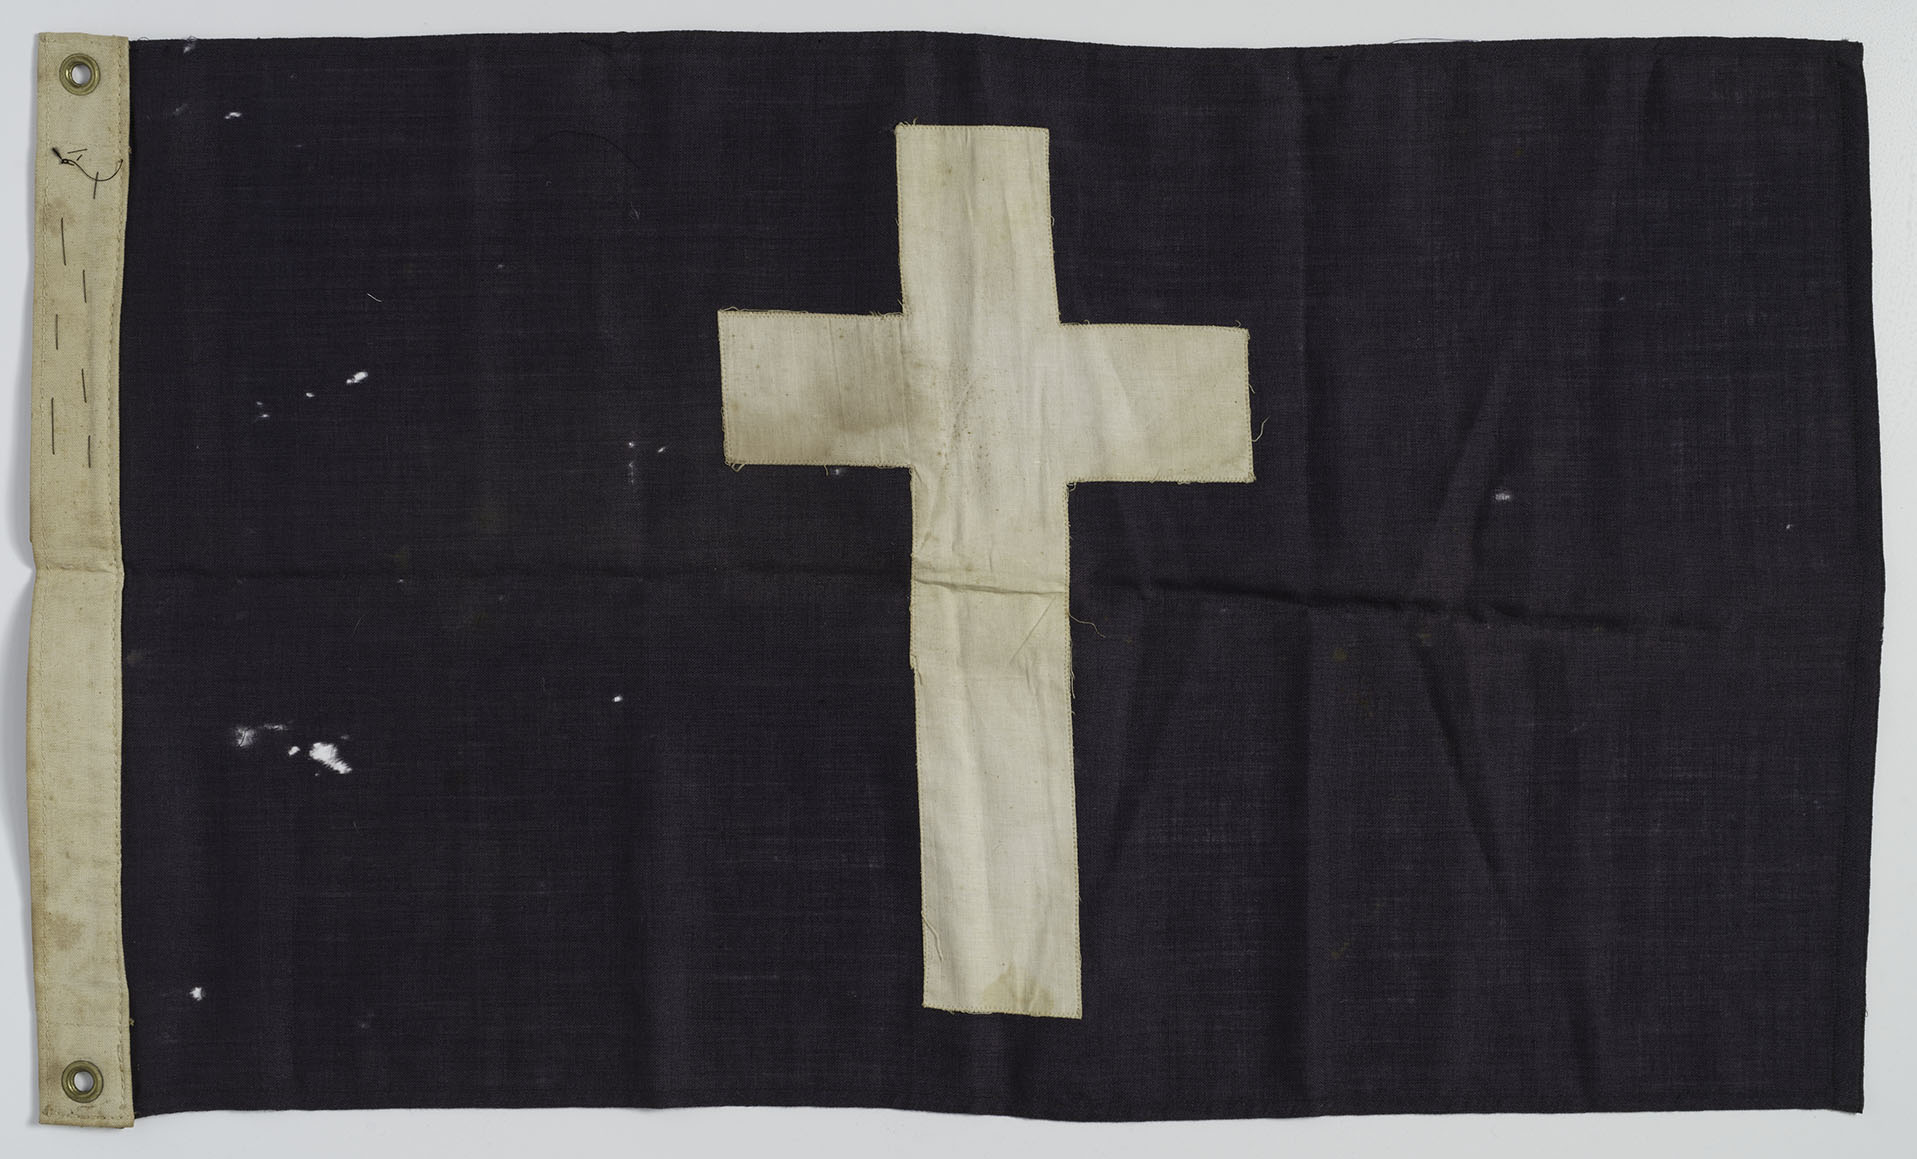 အလယ်ဗဟိုတွင် အဖြူရောင်လက်ဝါးကပ်တိုင်ပါသော အနက်ရောင်စတုဂံအလံ၏ ခေတ်မီဓာတ်ပုံ